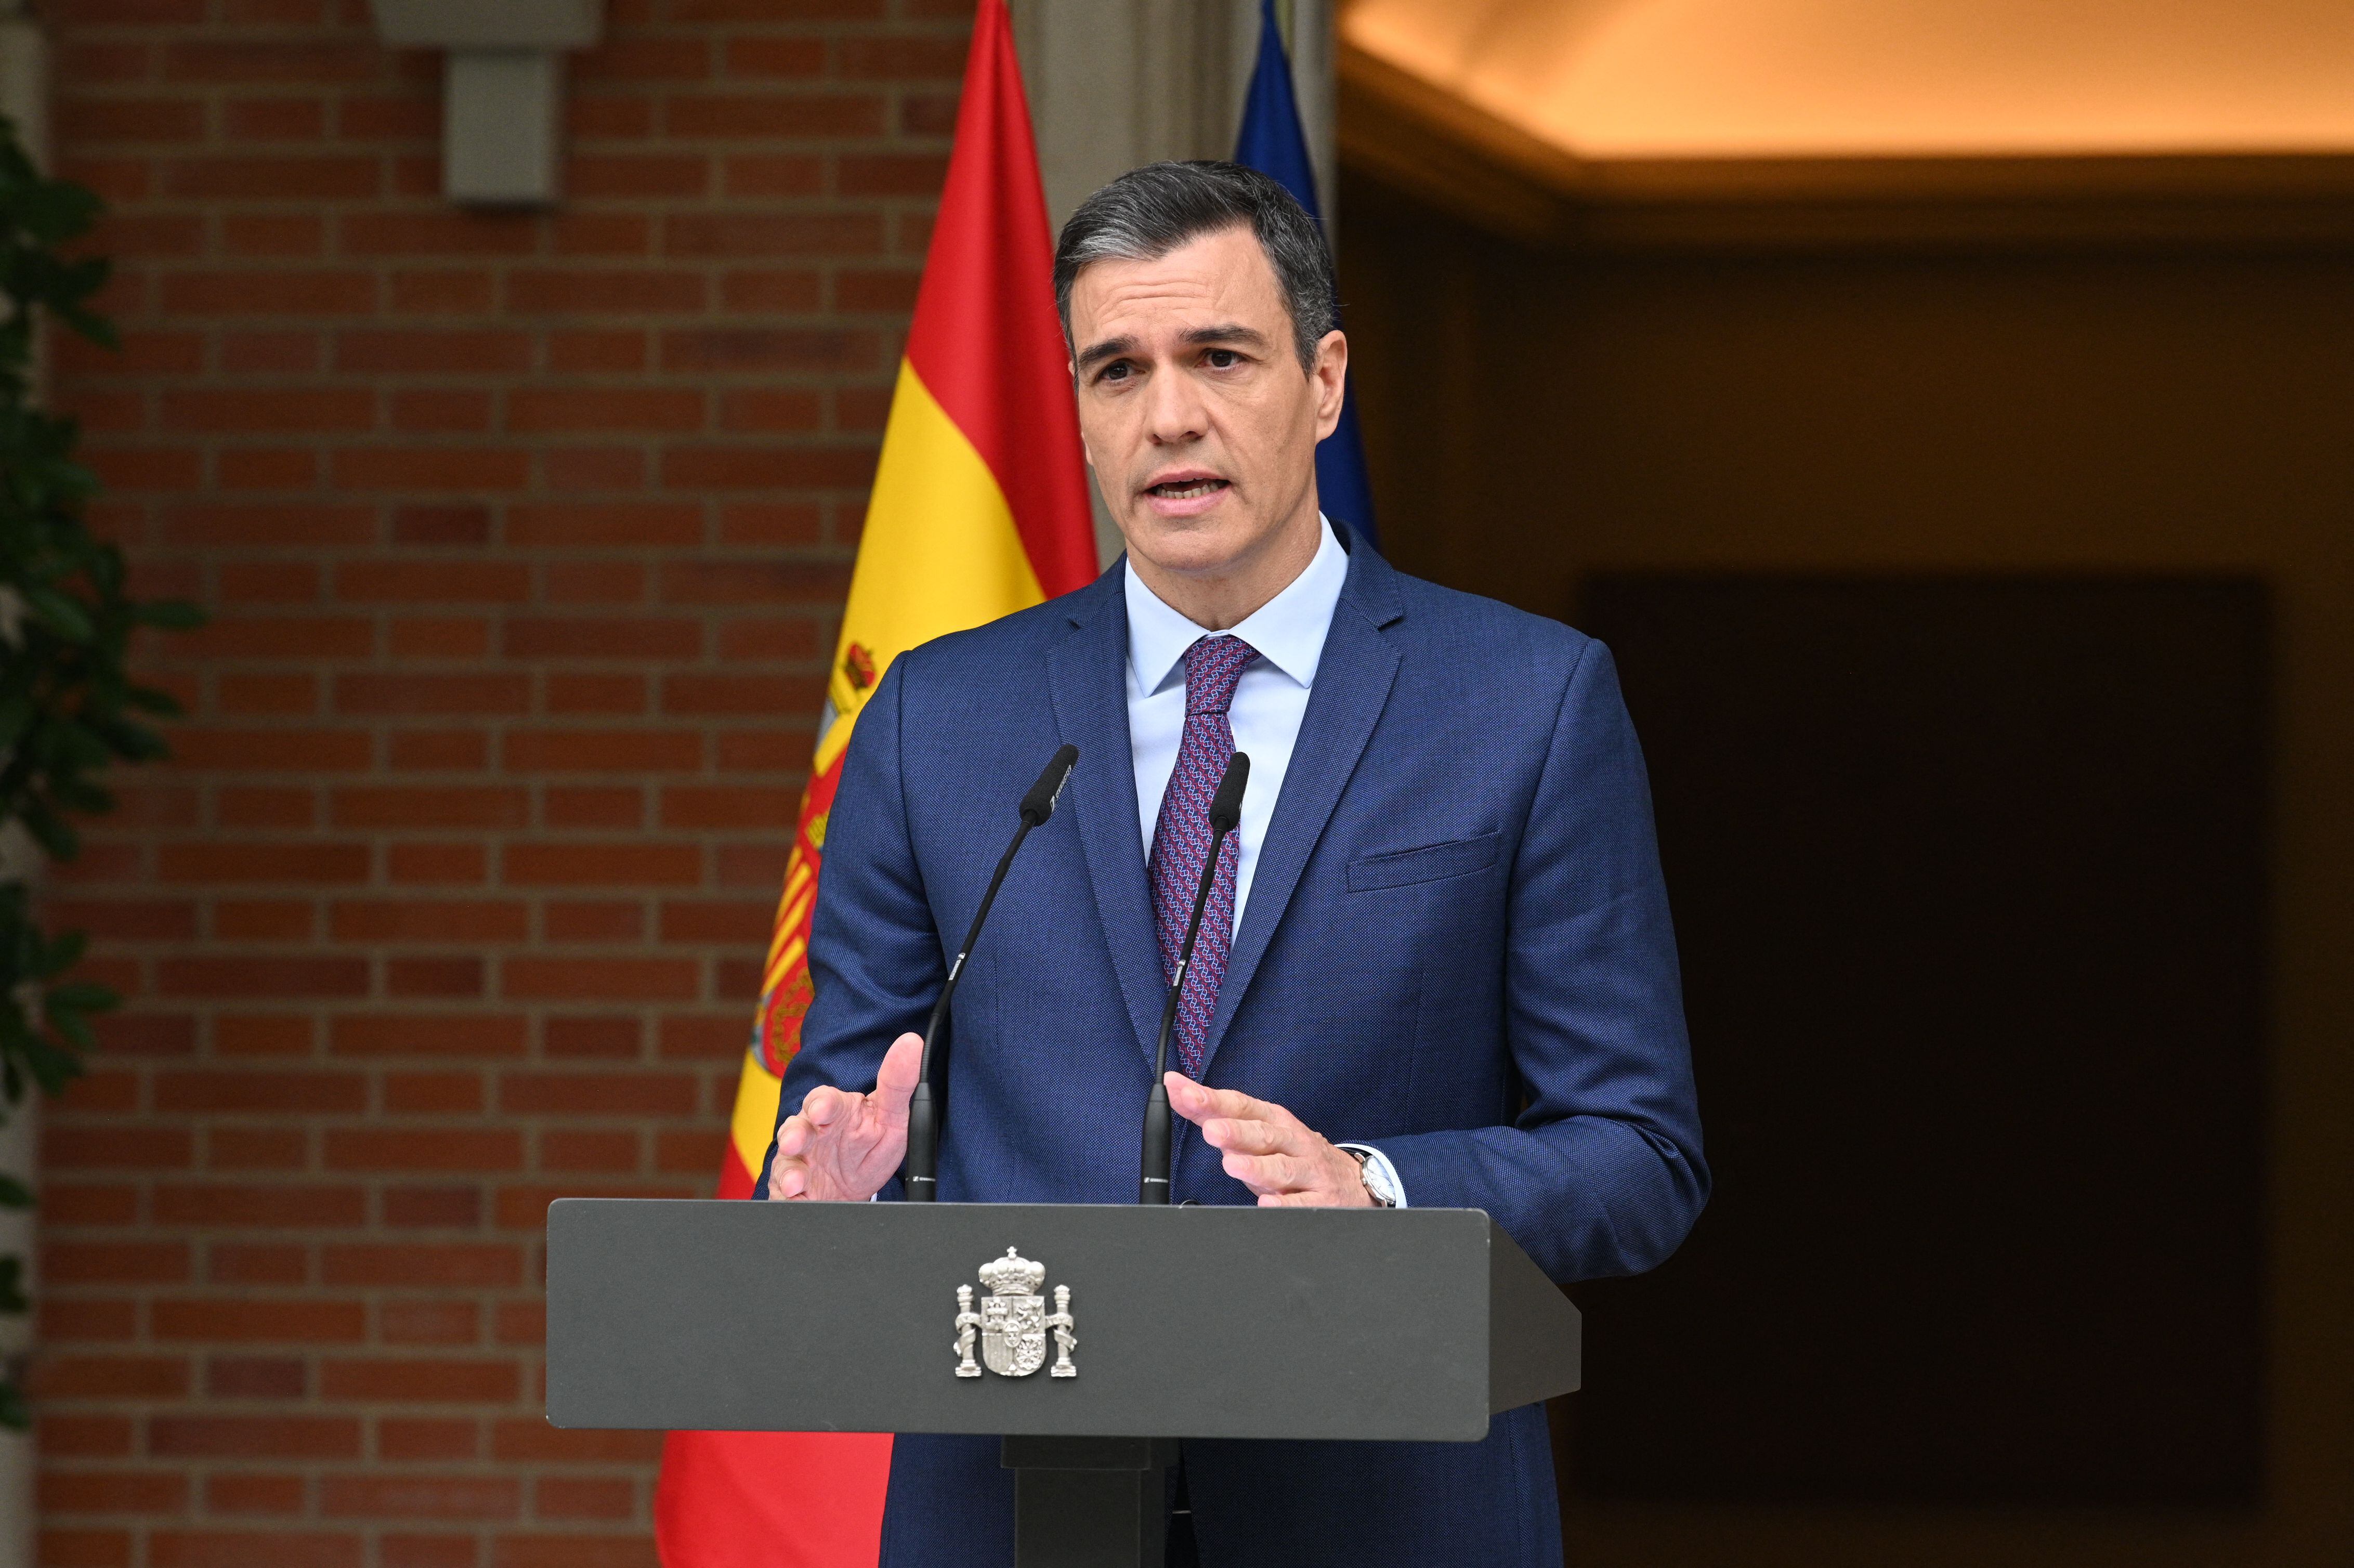 Pedro Sánchez, presidente de España, apoya una campaña para desmentir sondeos sobre una posible victoria de derecha.